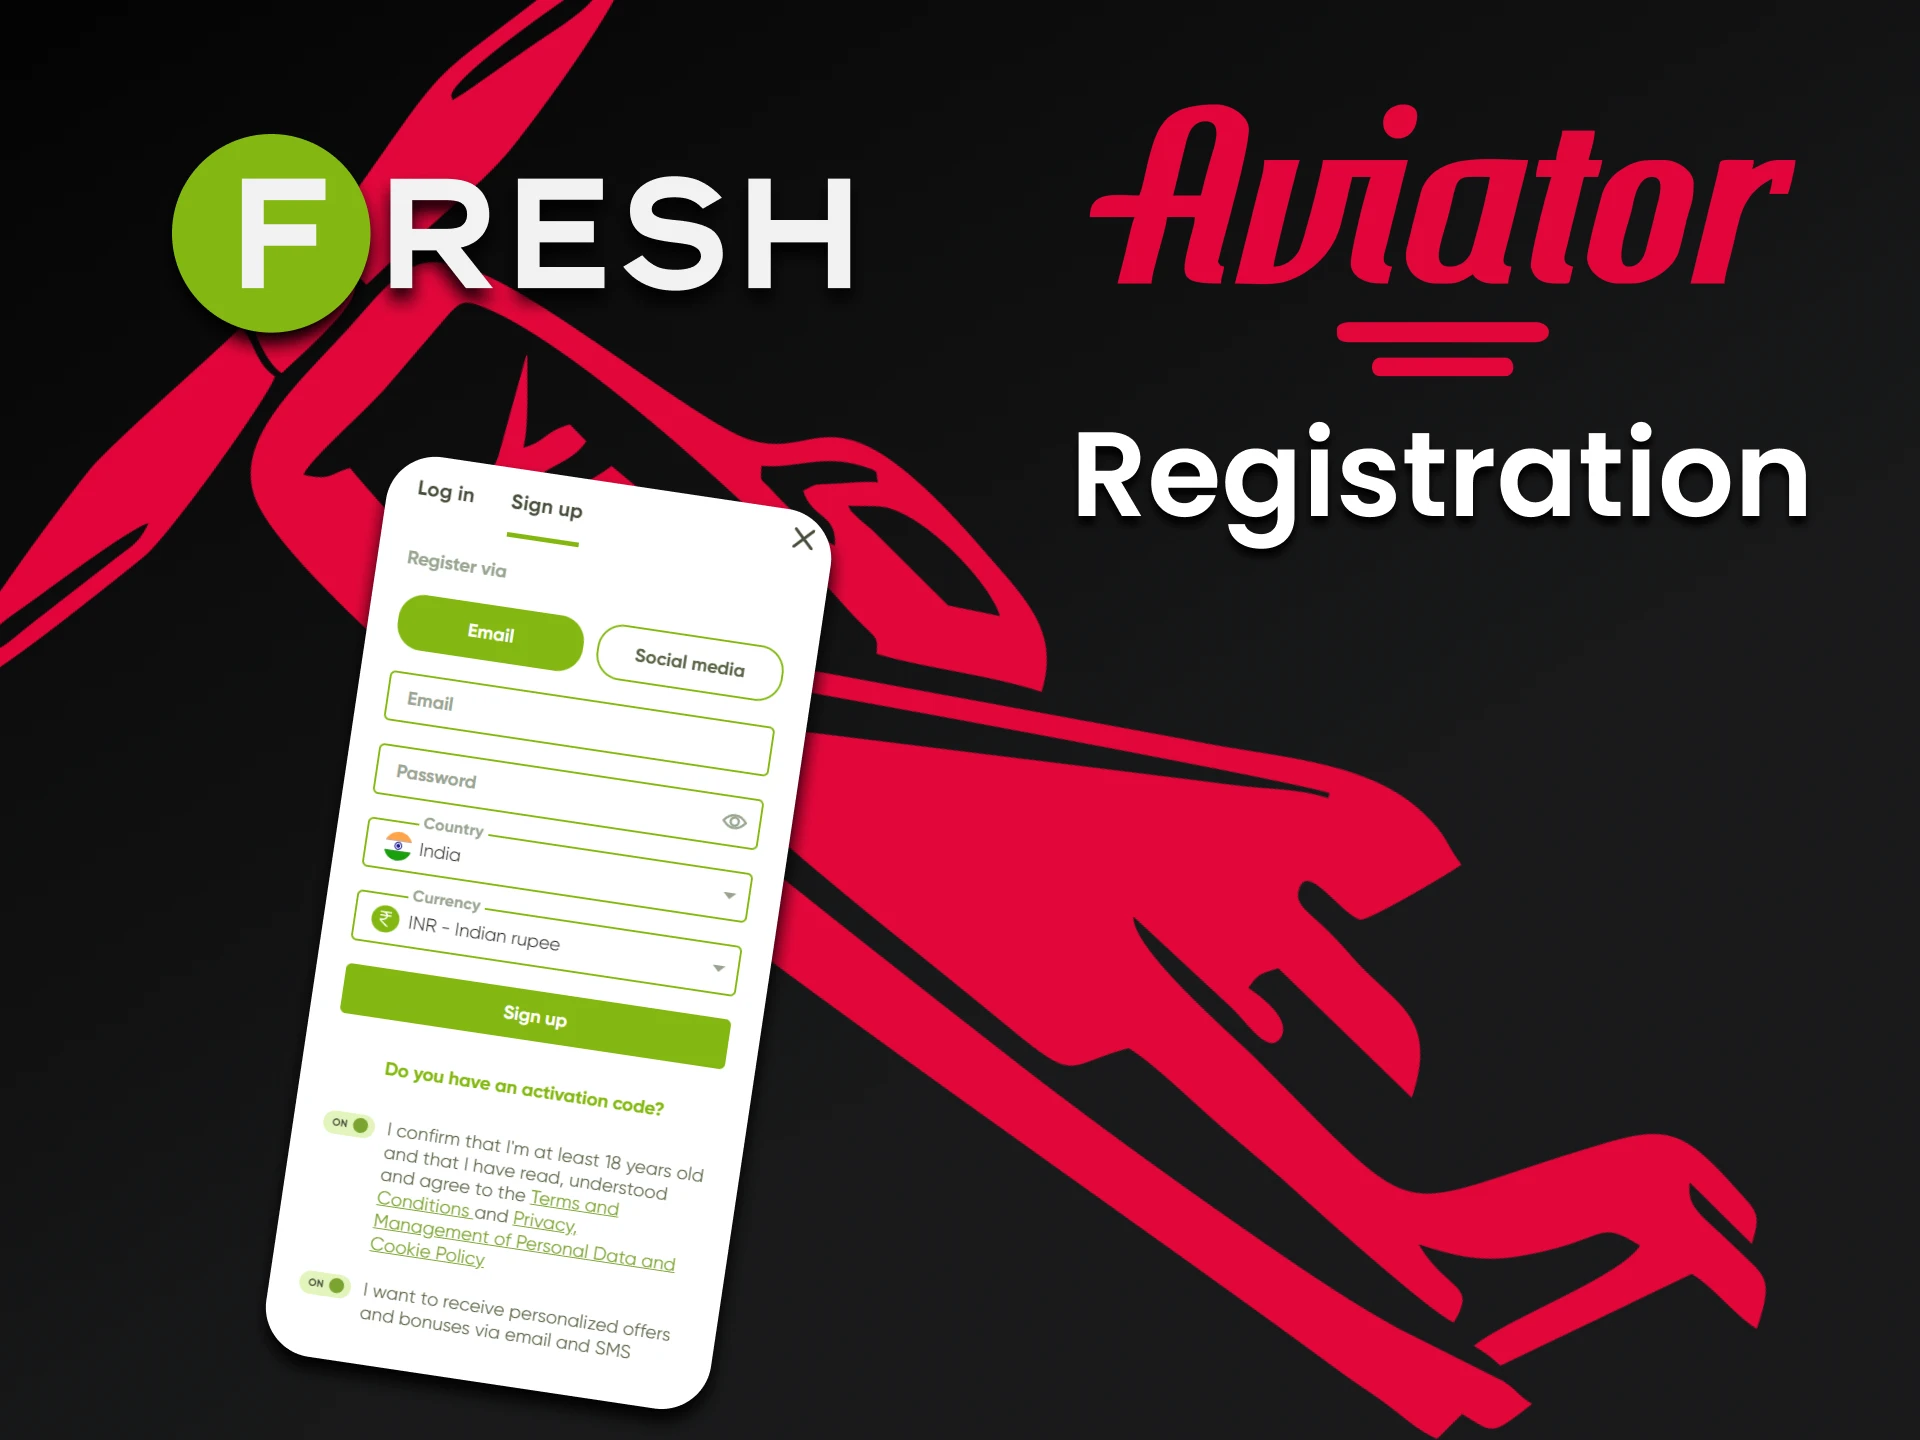 Register at Fresh Casino to play Aviator.